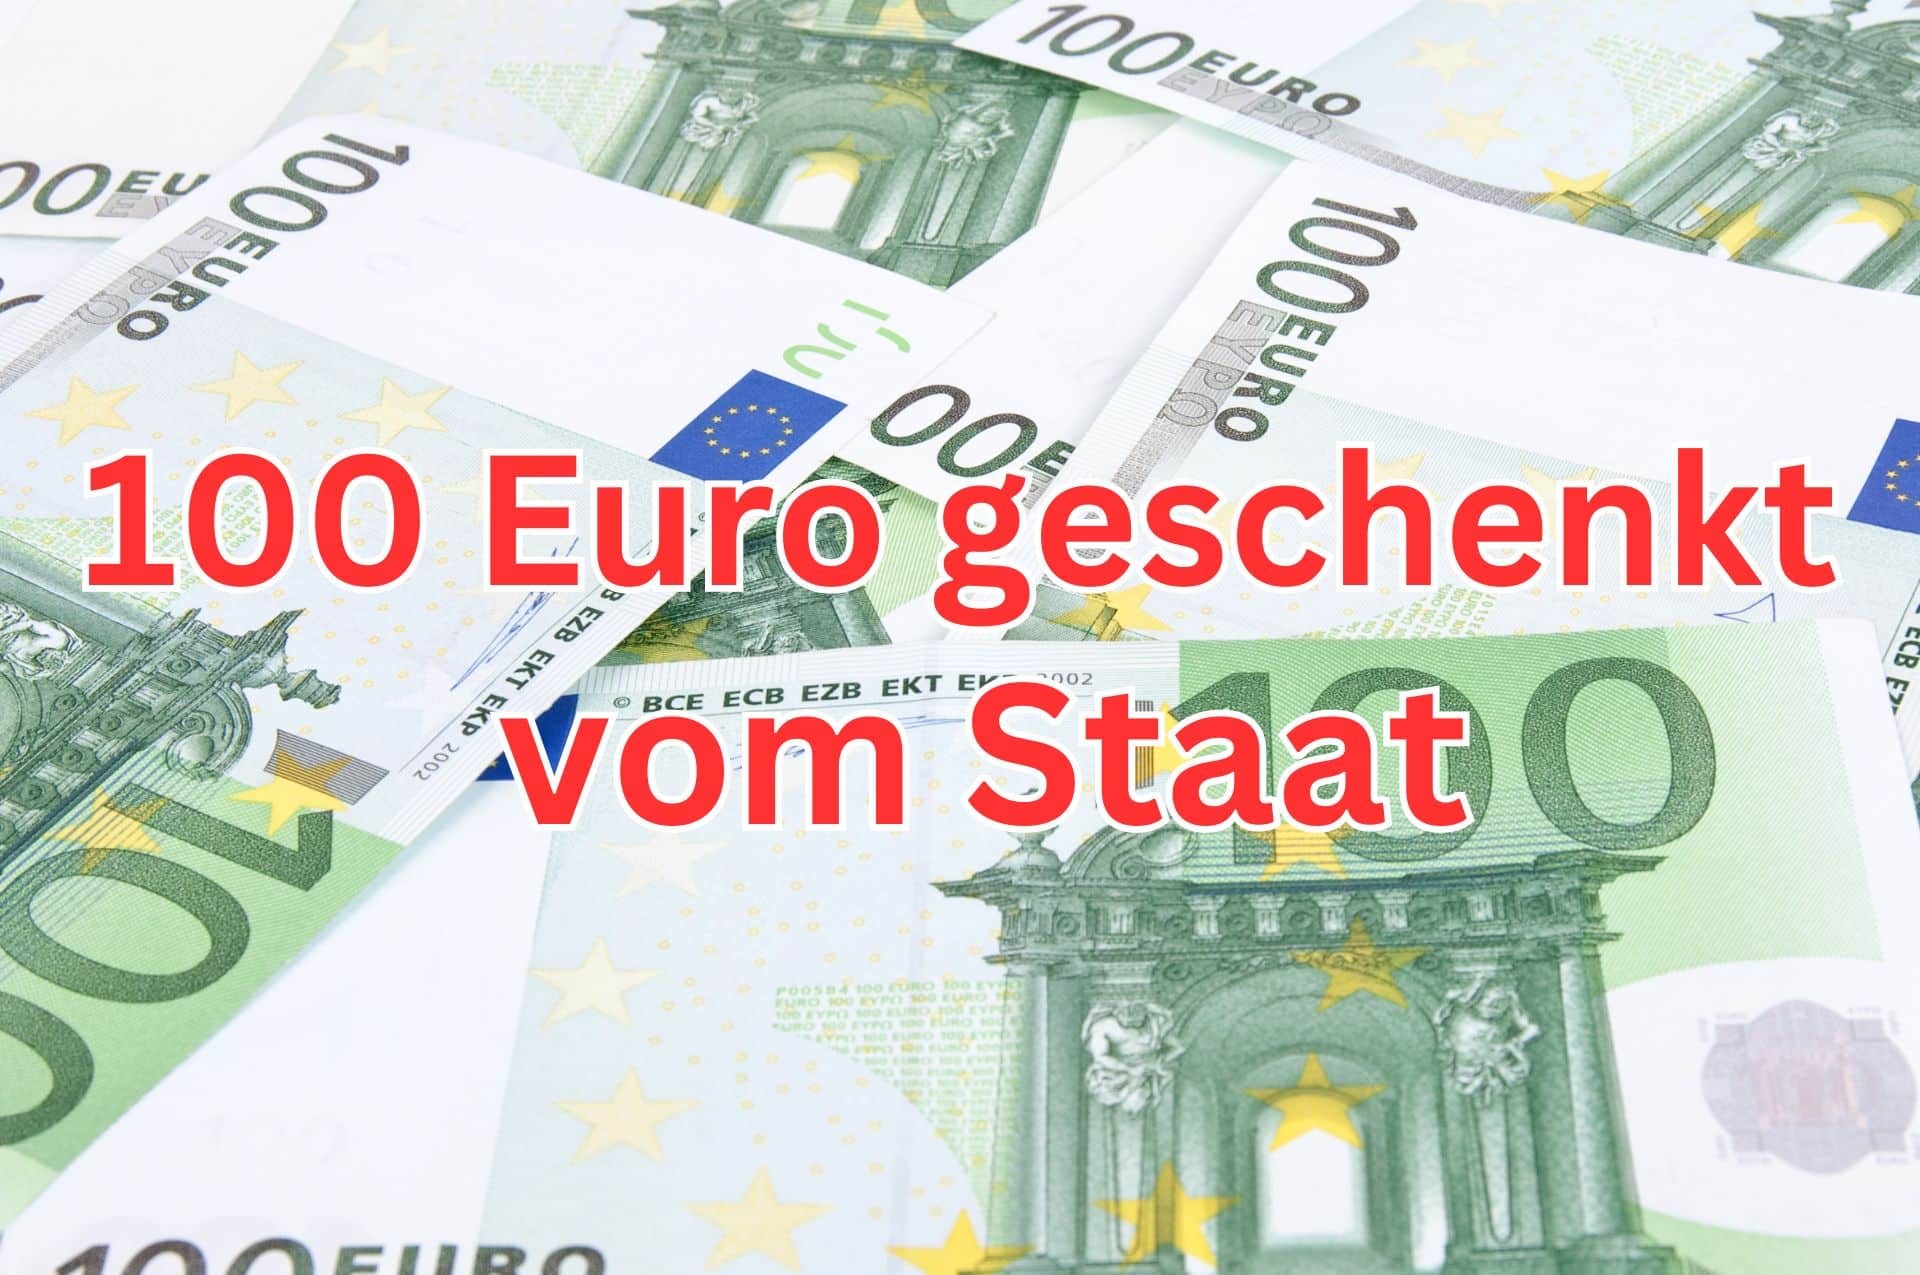 Geburtstagsgeld vom Staat: Jetzt 100 Euro sichern! Auch für Bürgergeld-Empfänger